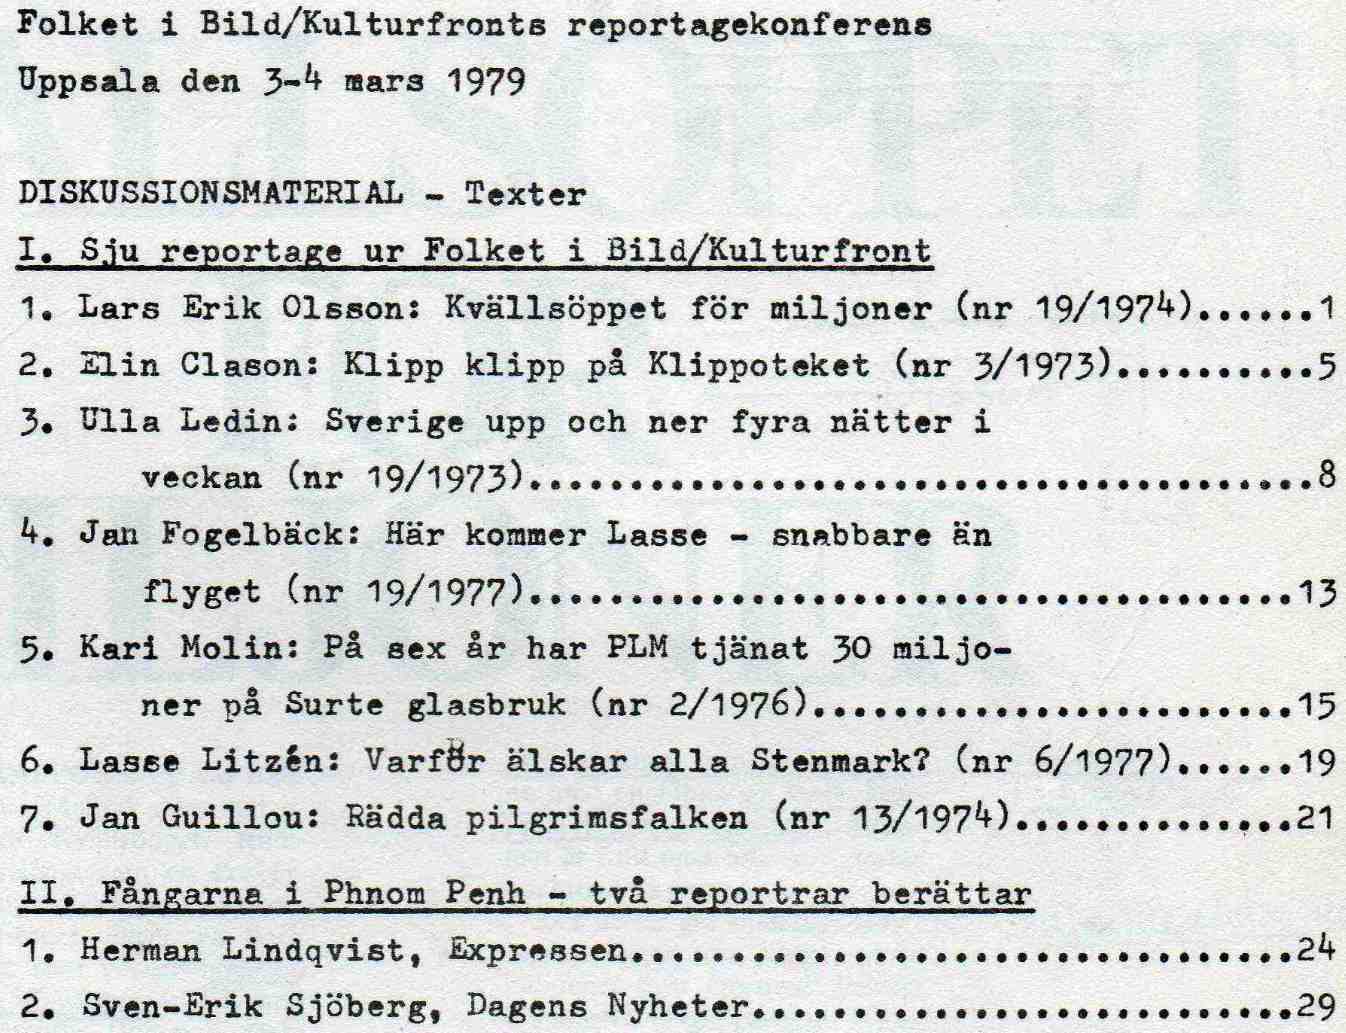 FIB-KF_Kulturkonferens_1979.jpg